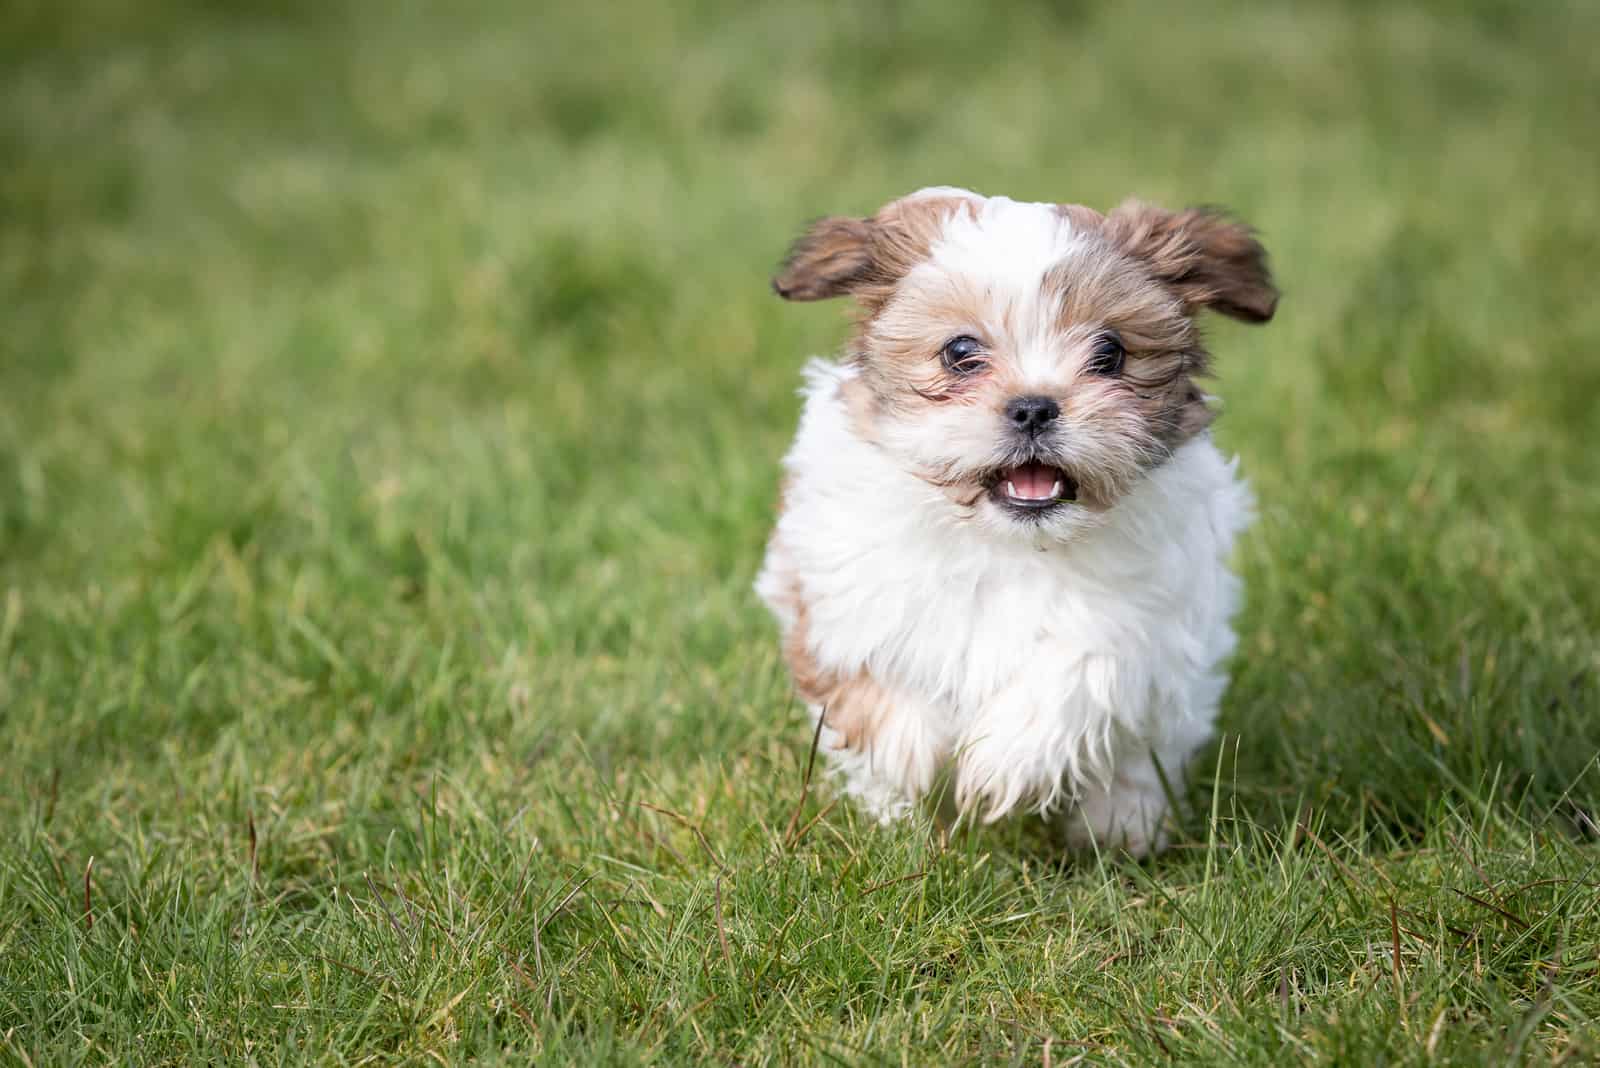 shih tzu puppy running on the grass